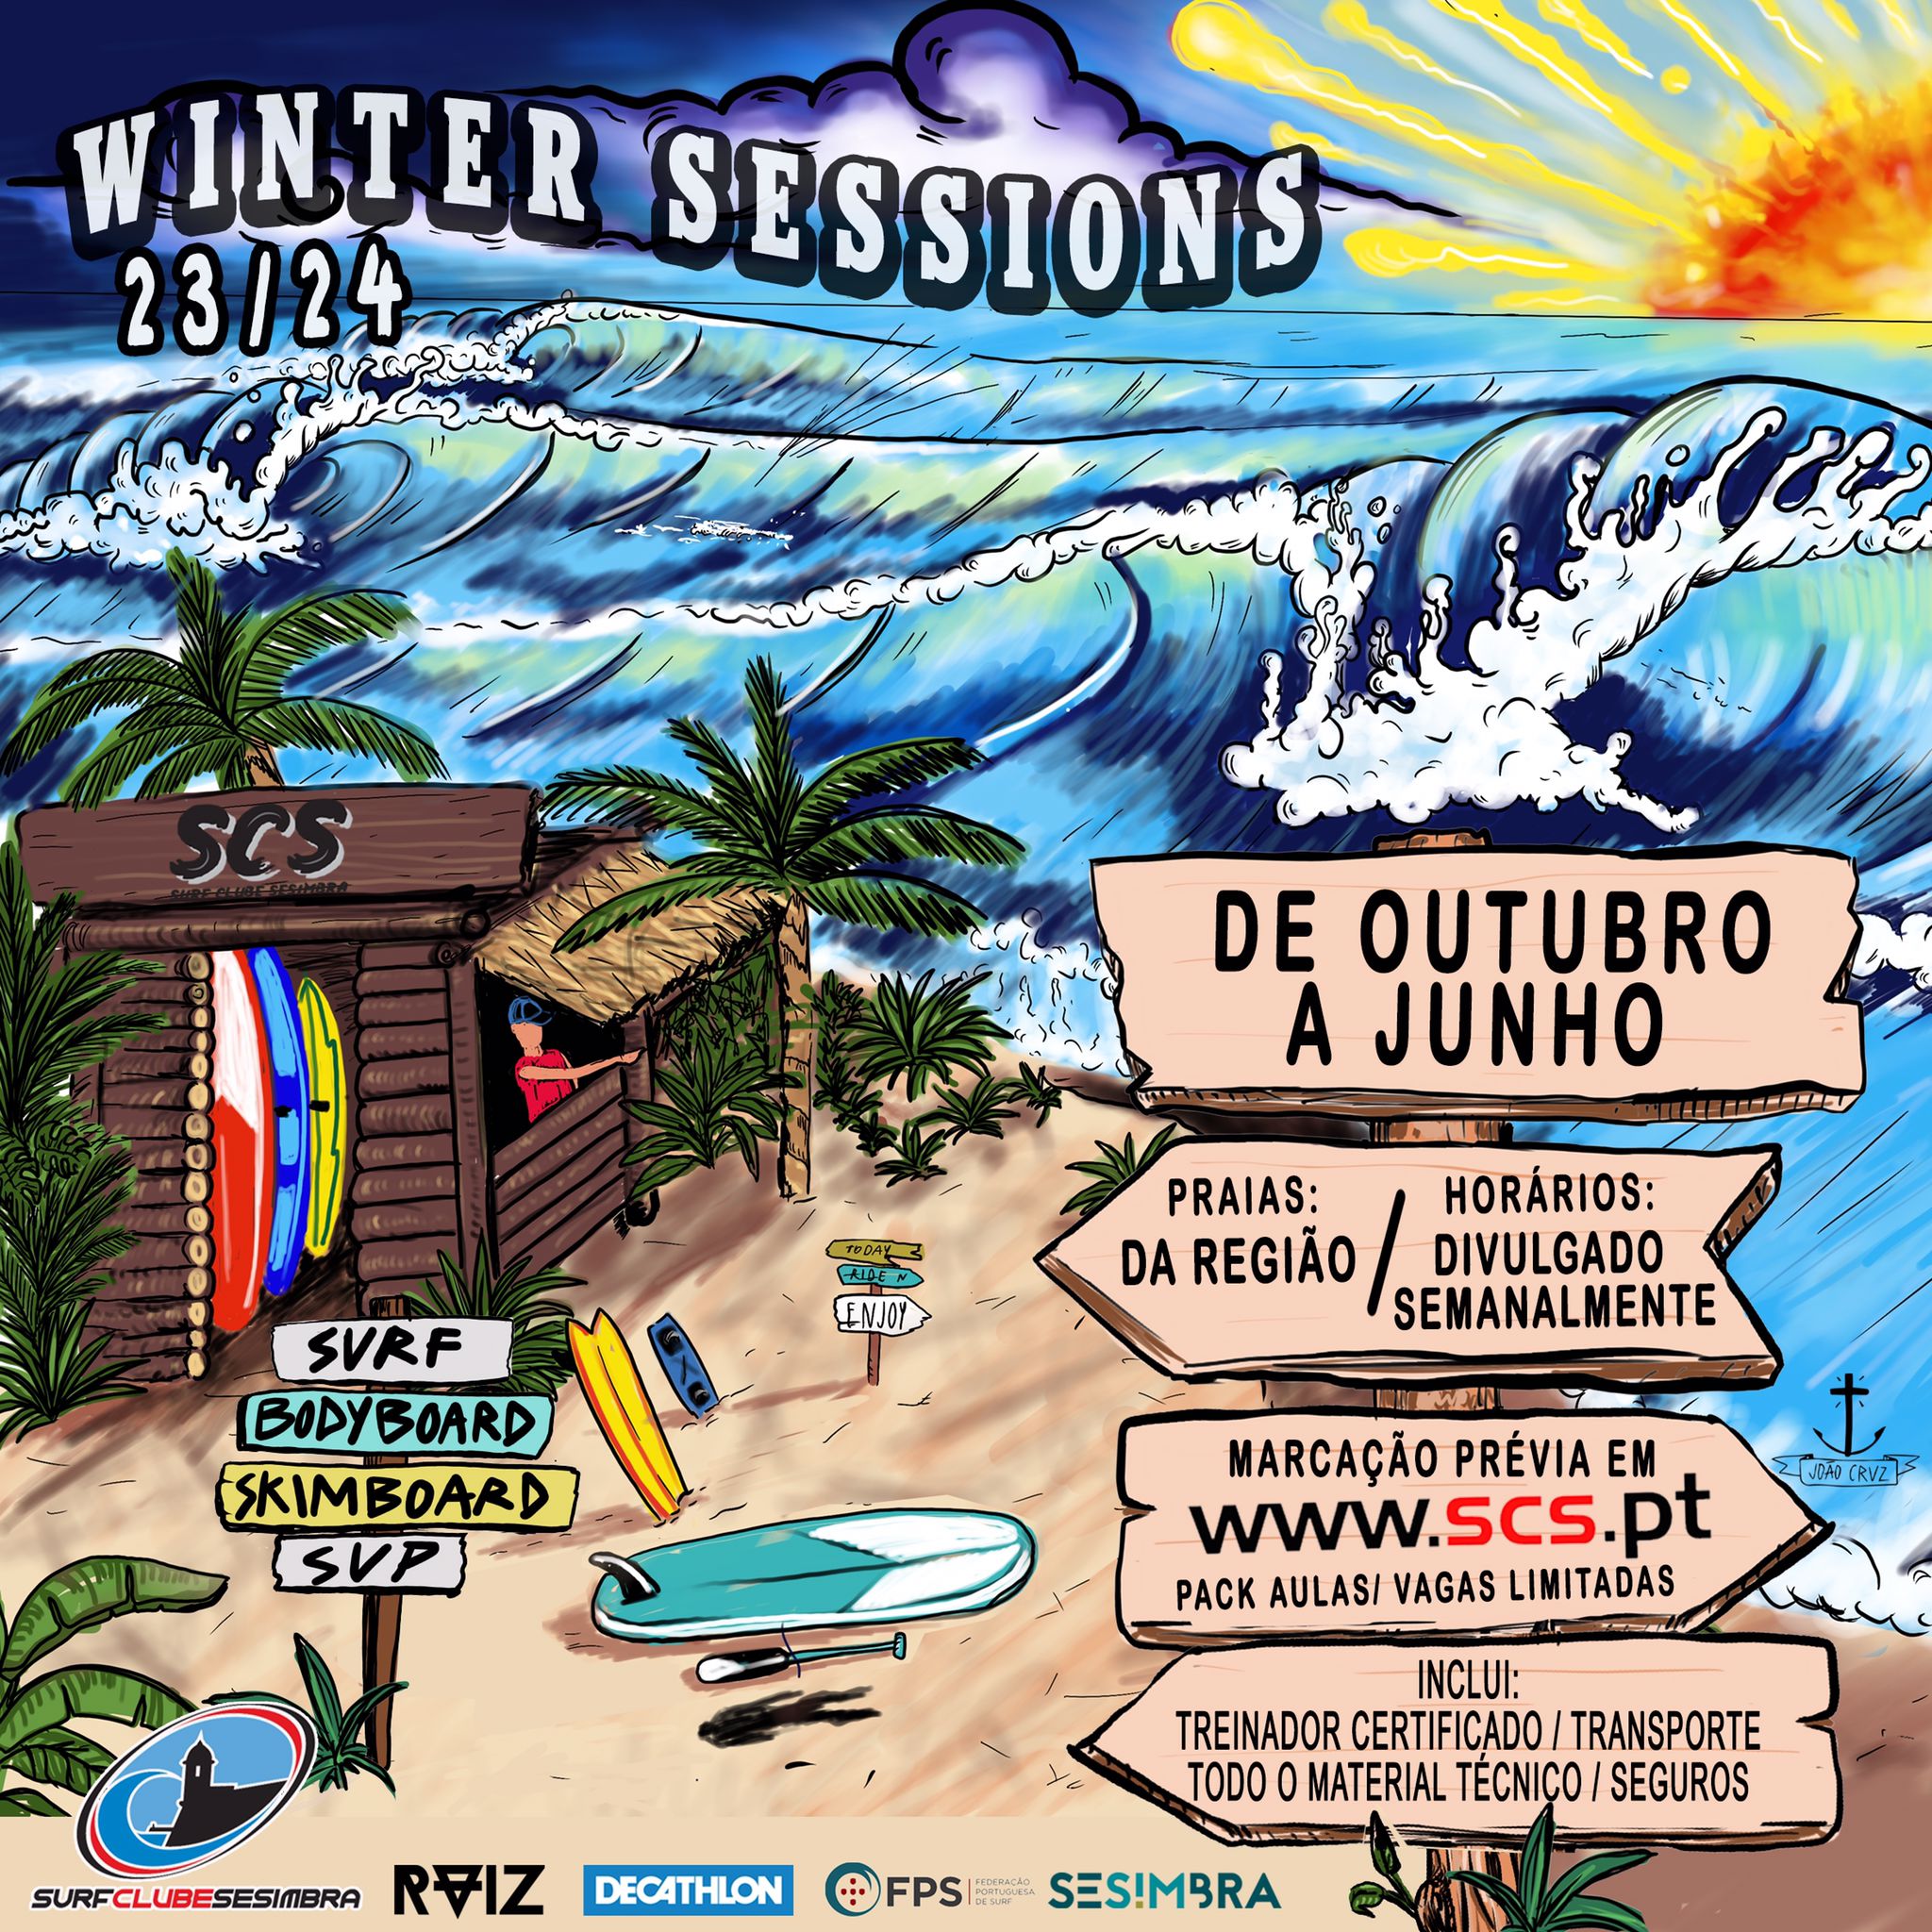 Winter Sessions - Aula de Surf, Bodyboad e Skimboard - domingo dia 18 de fevereiro - 10h30 às 12h30 - Praia do Ouro, Sesimbra